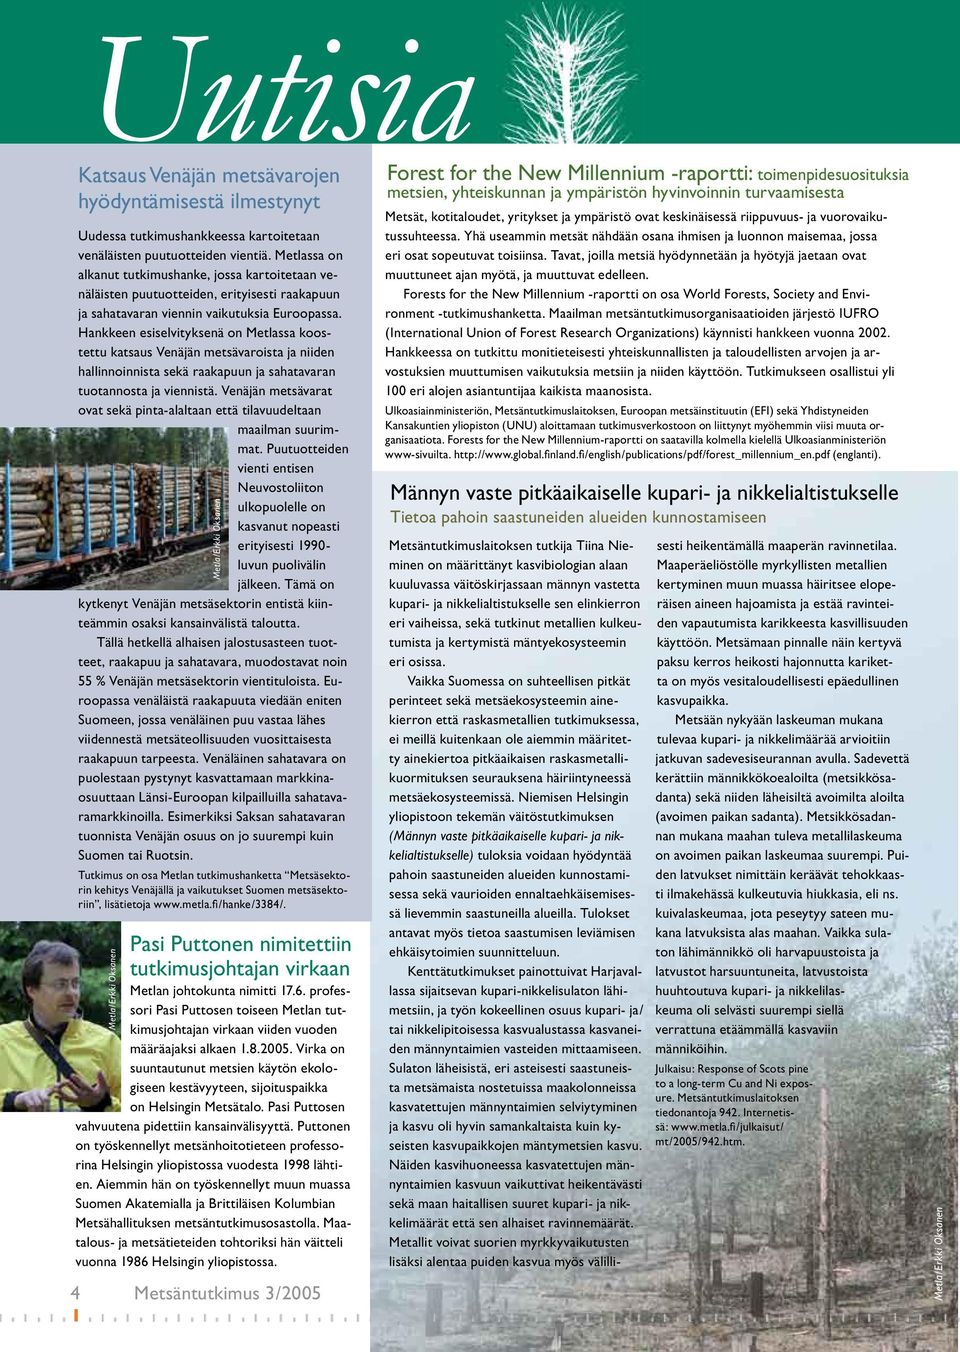 Hankkeen esiselvityksenä on Metlassa koostettu katsaus Venäjän metsävaroista ja niiden hallinnoinnista sekä raakapuun ja sahatavaran tuotannosta ja viennistä.